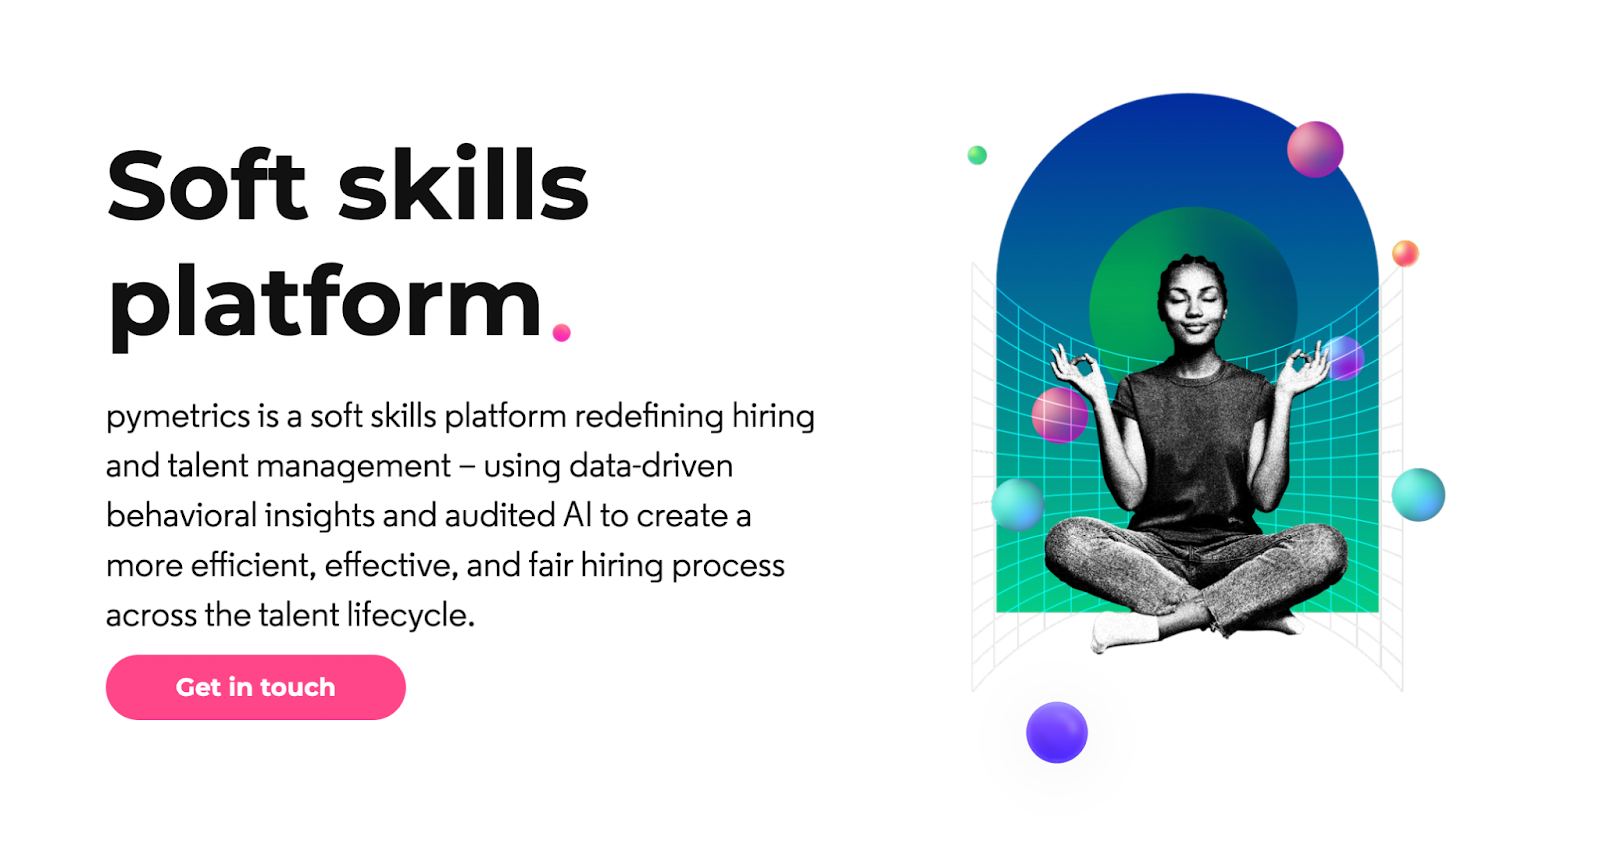 soft skills platform: Entelo is a soft skills platform redefining hiring and talent management.